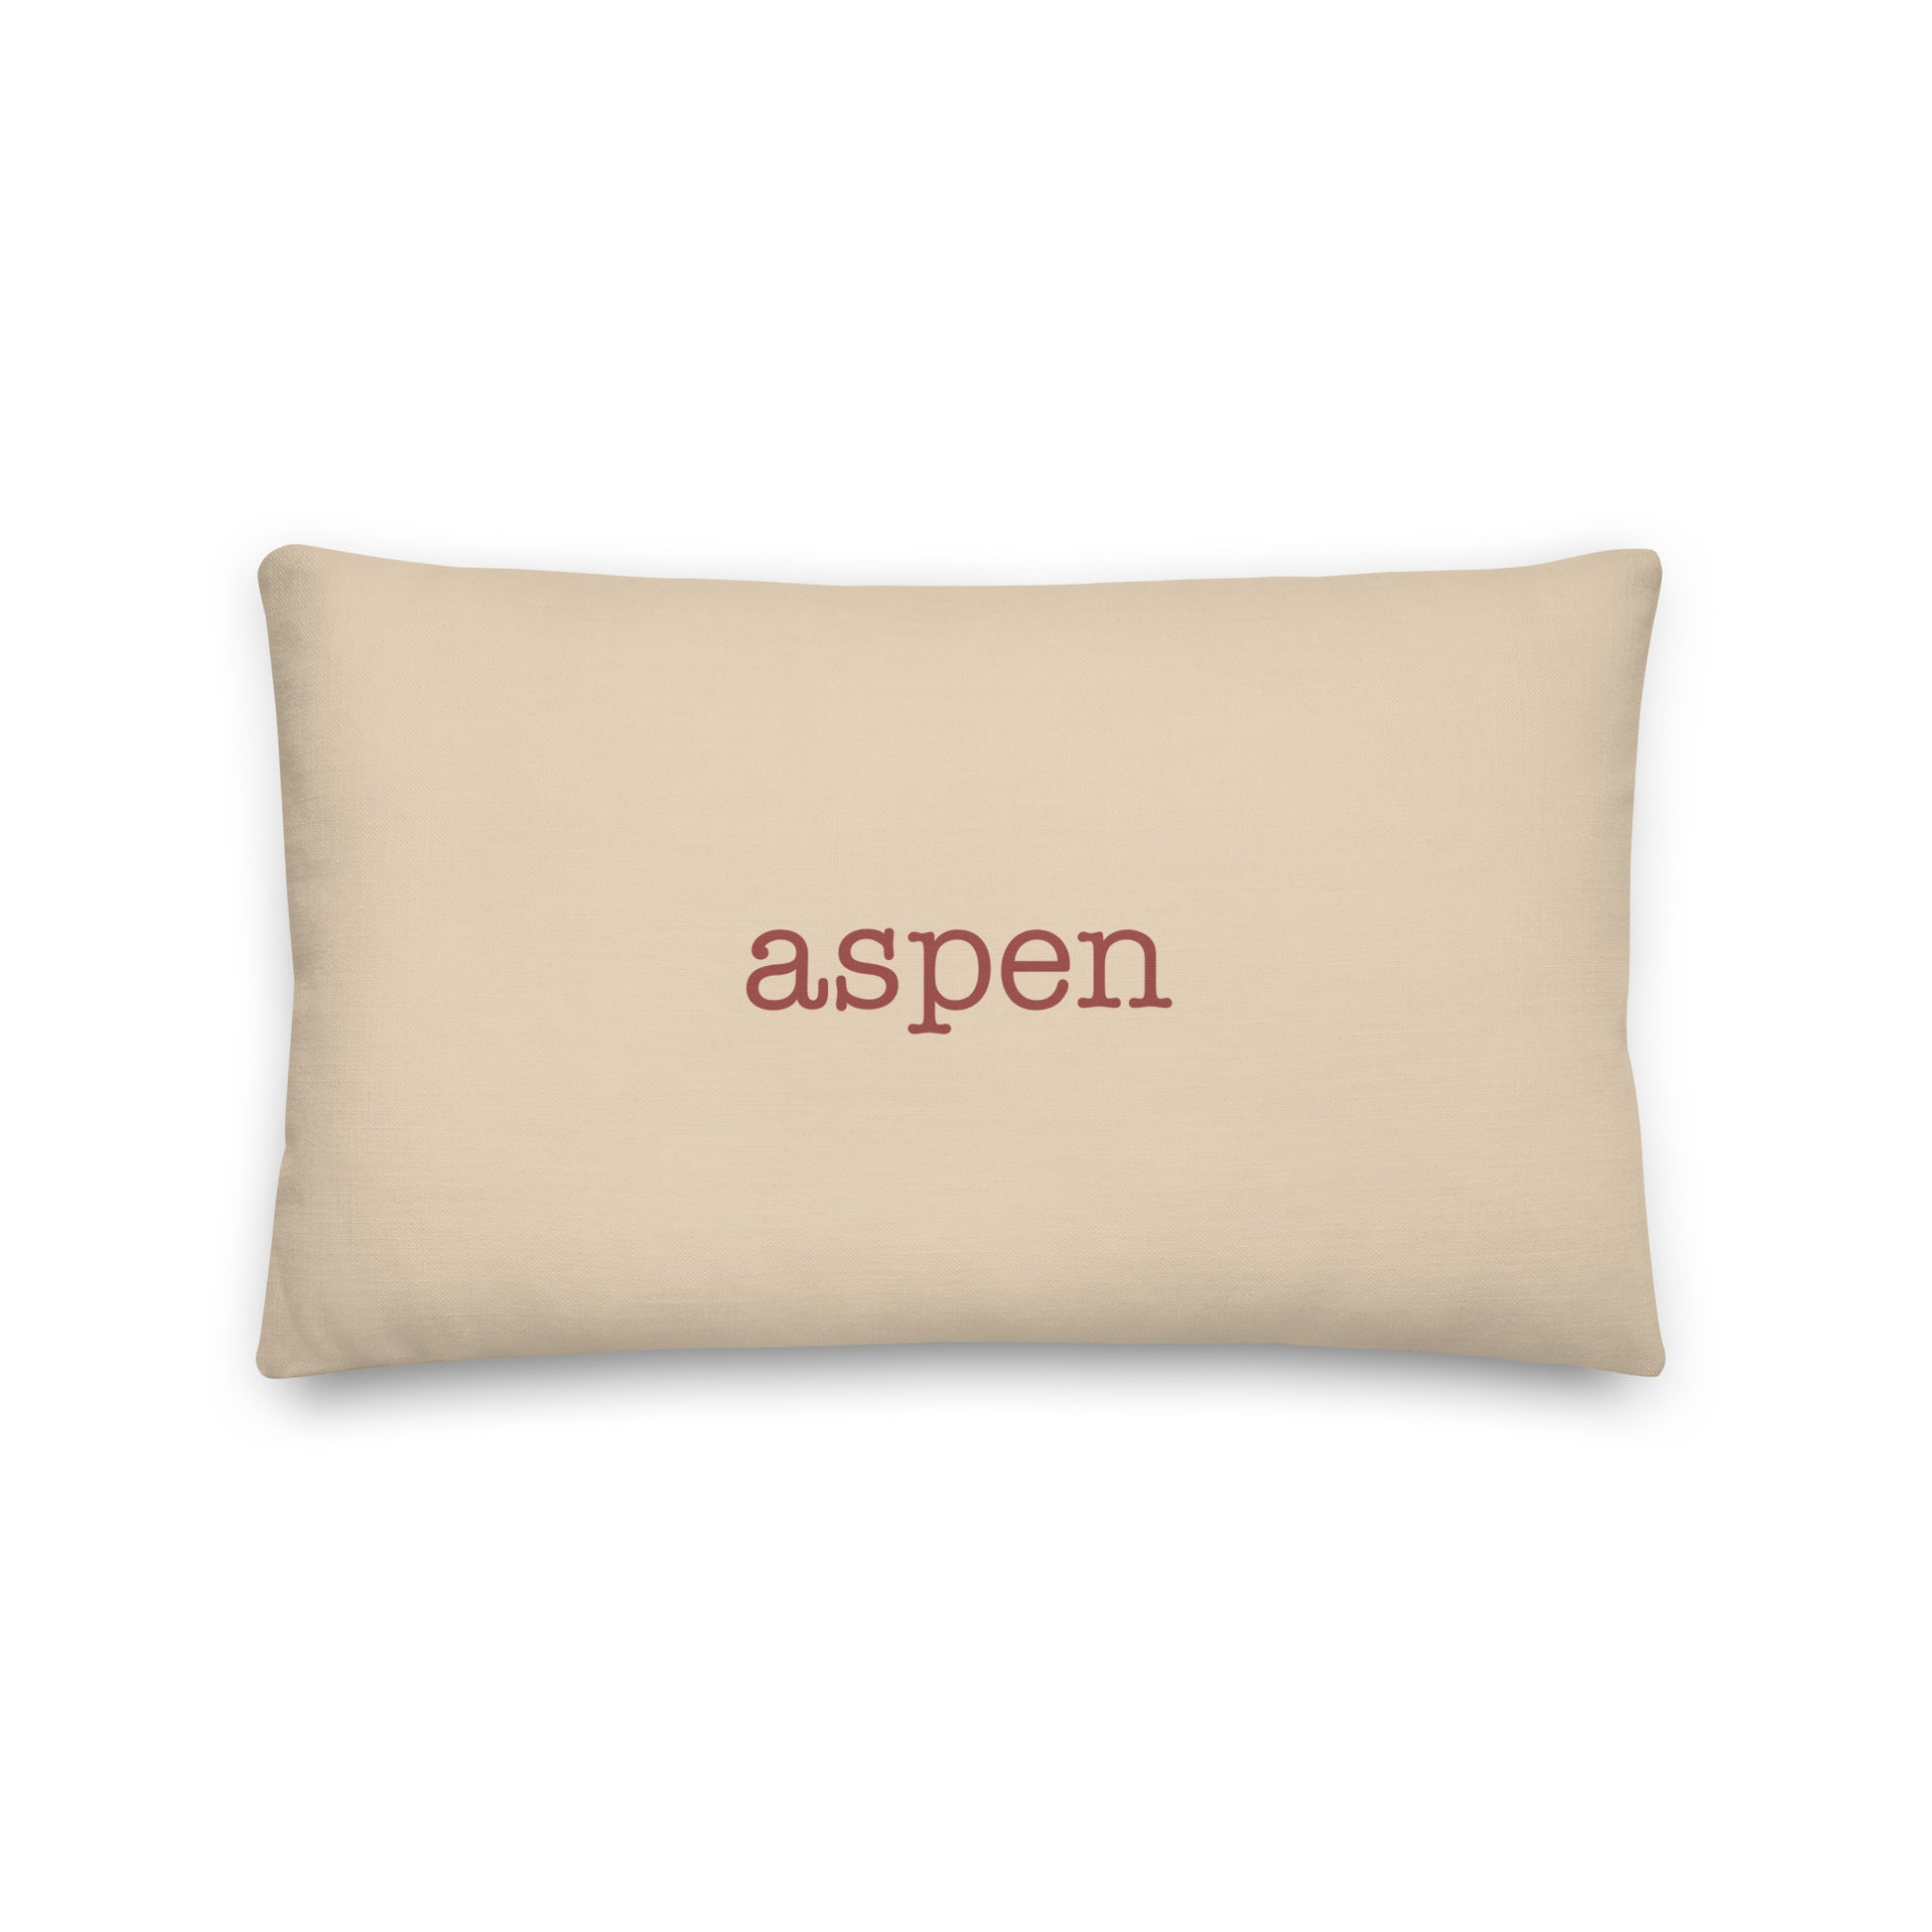 Typewriter Pillow - Terra Cotta • ASE Aspen • YHM Designs - Image 01